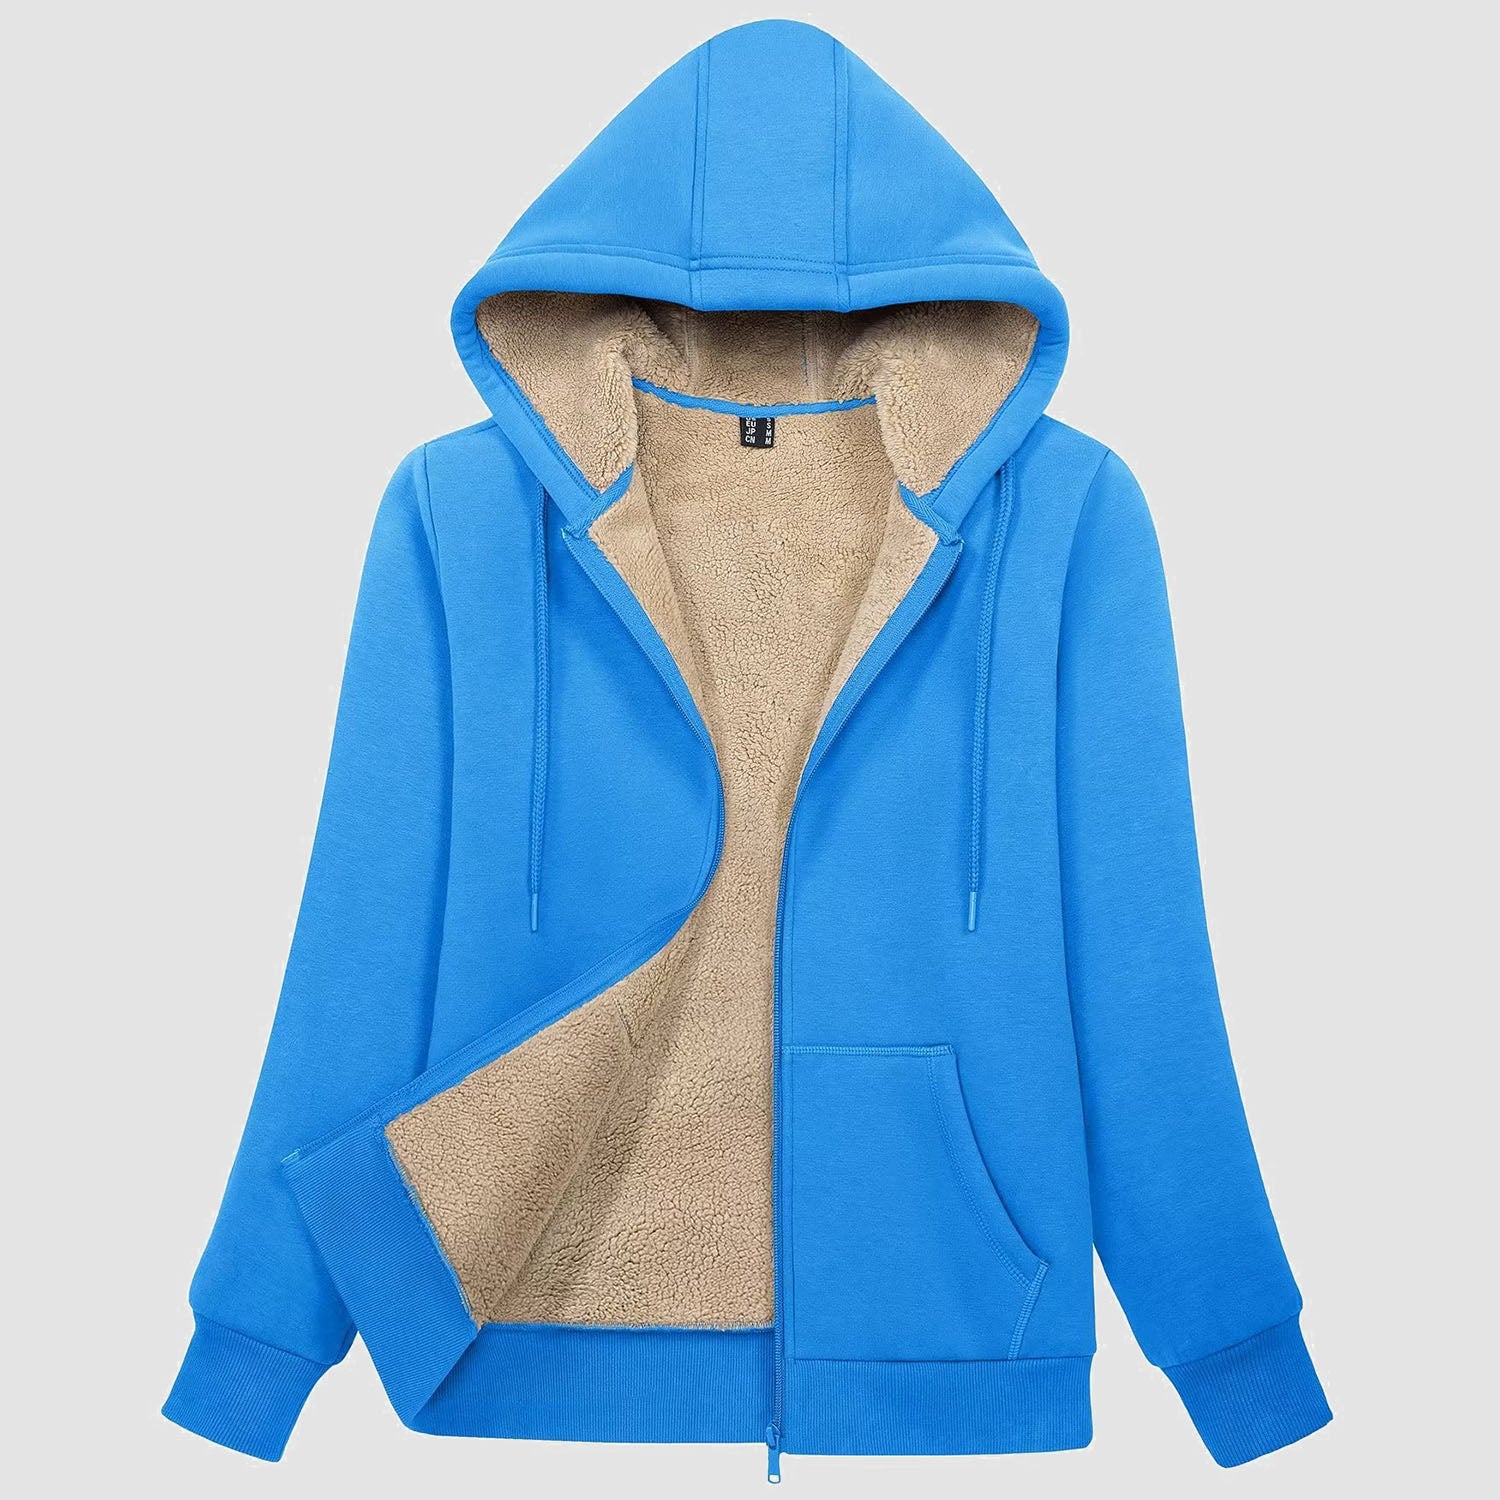 Womens Zip Up Hoodie Sherpa Lined Fleece Jacket Winter Warm Jacket